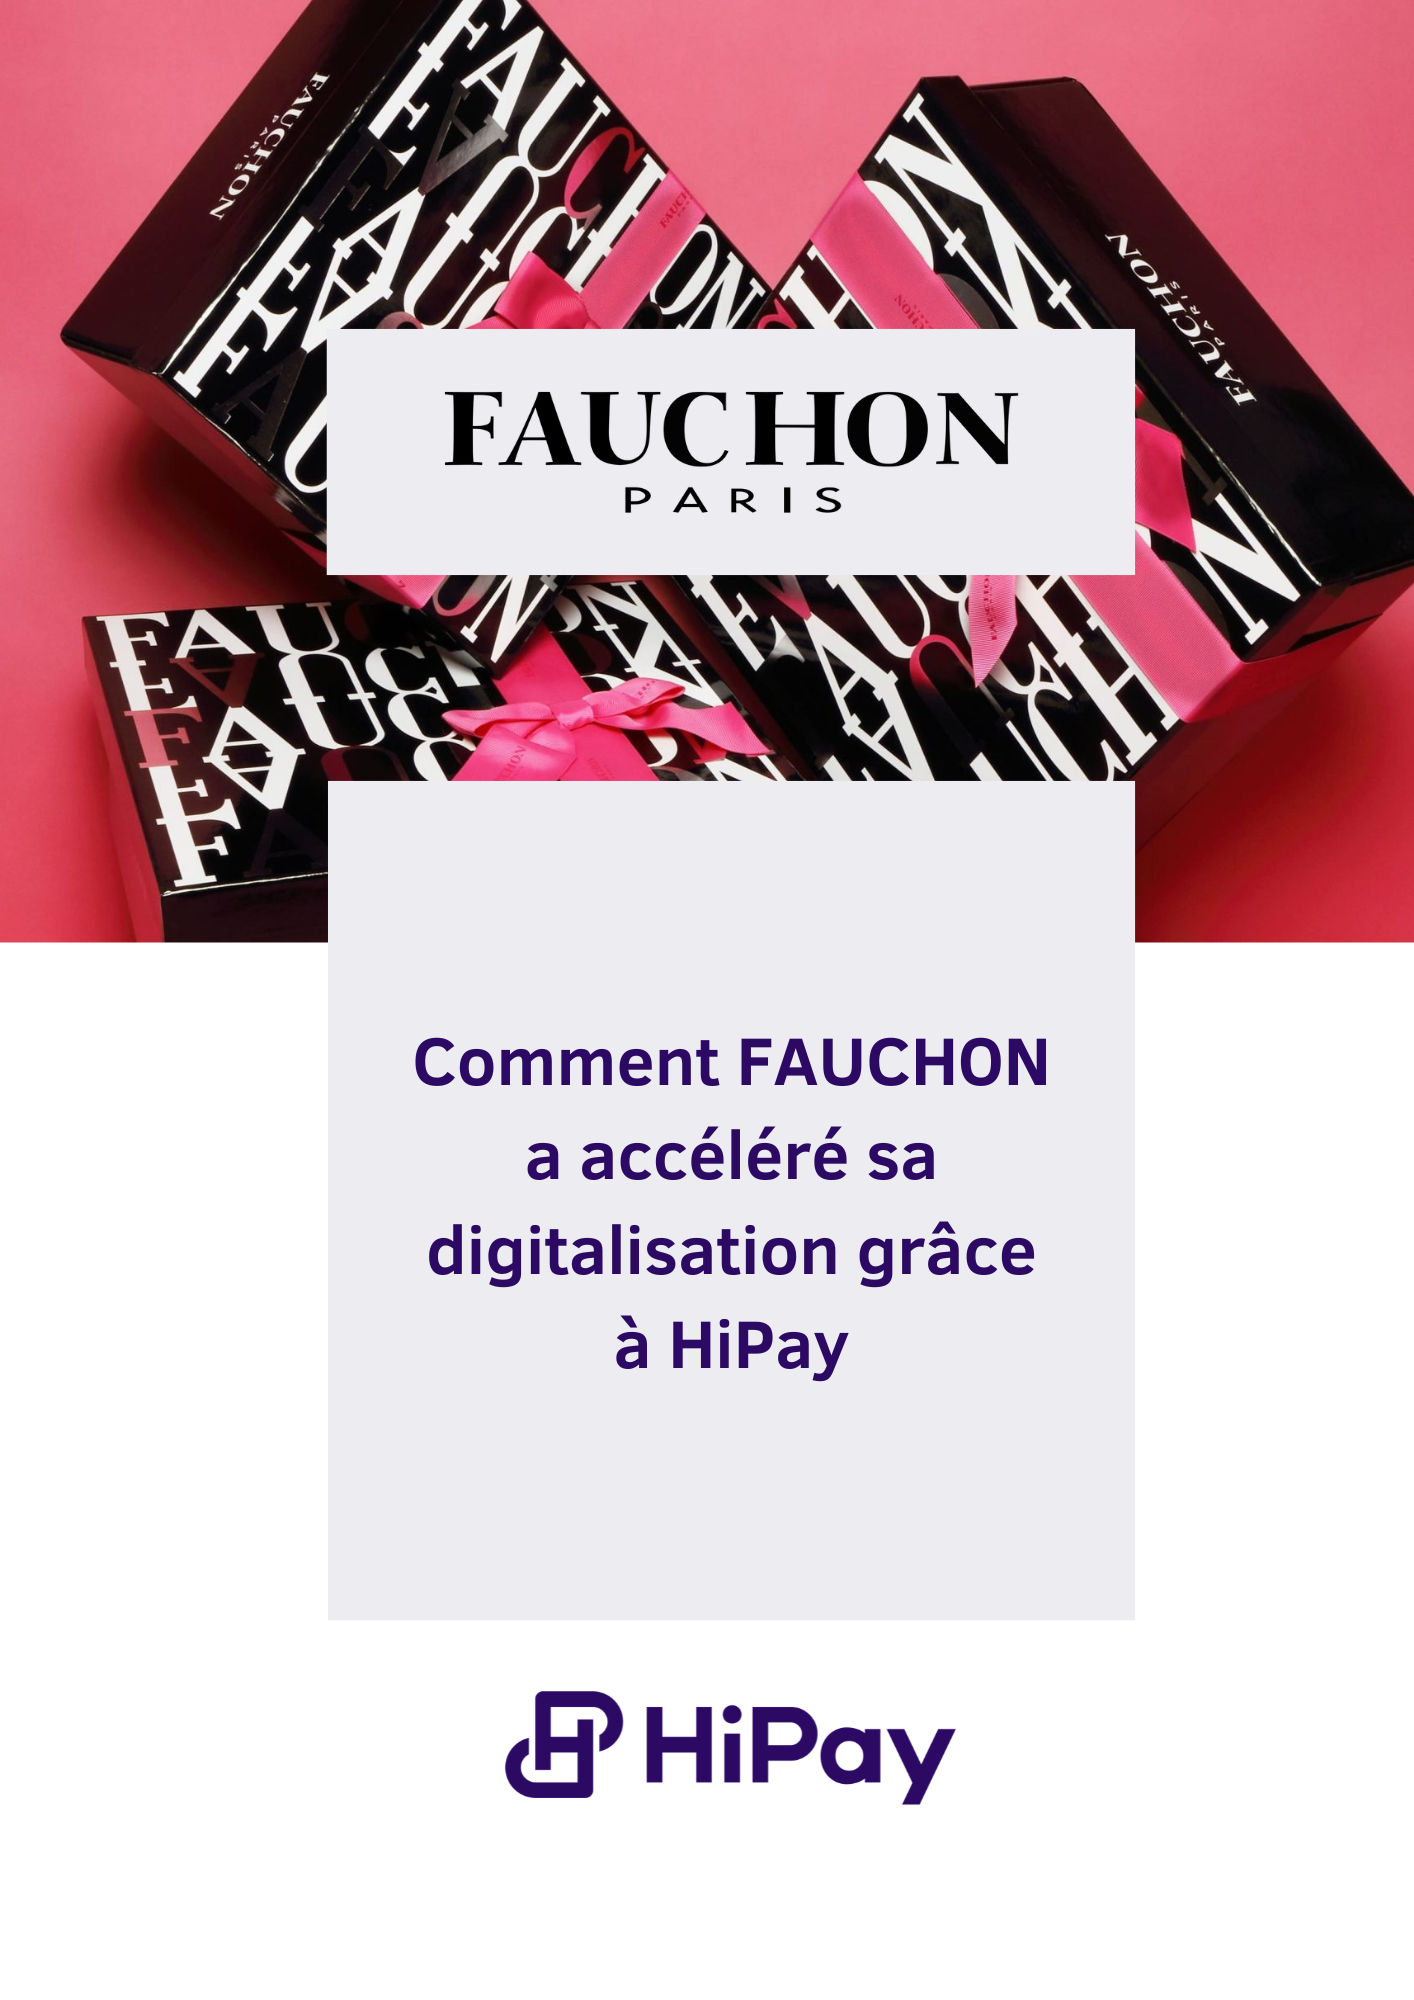 Téléchargement_Fauchon_image_FR